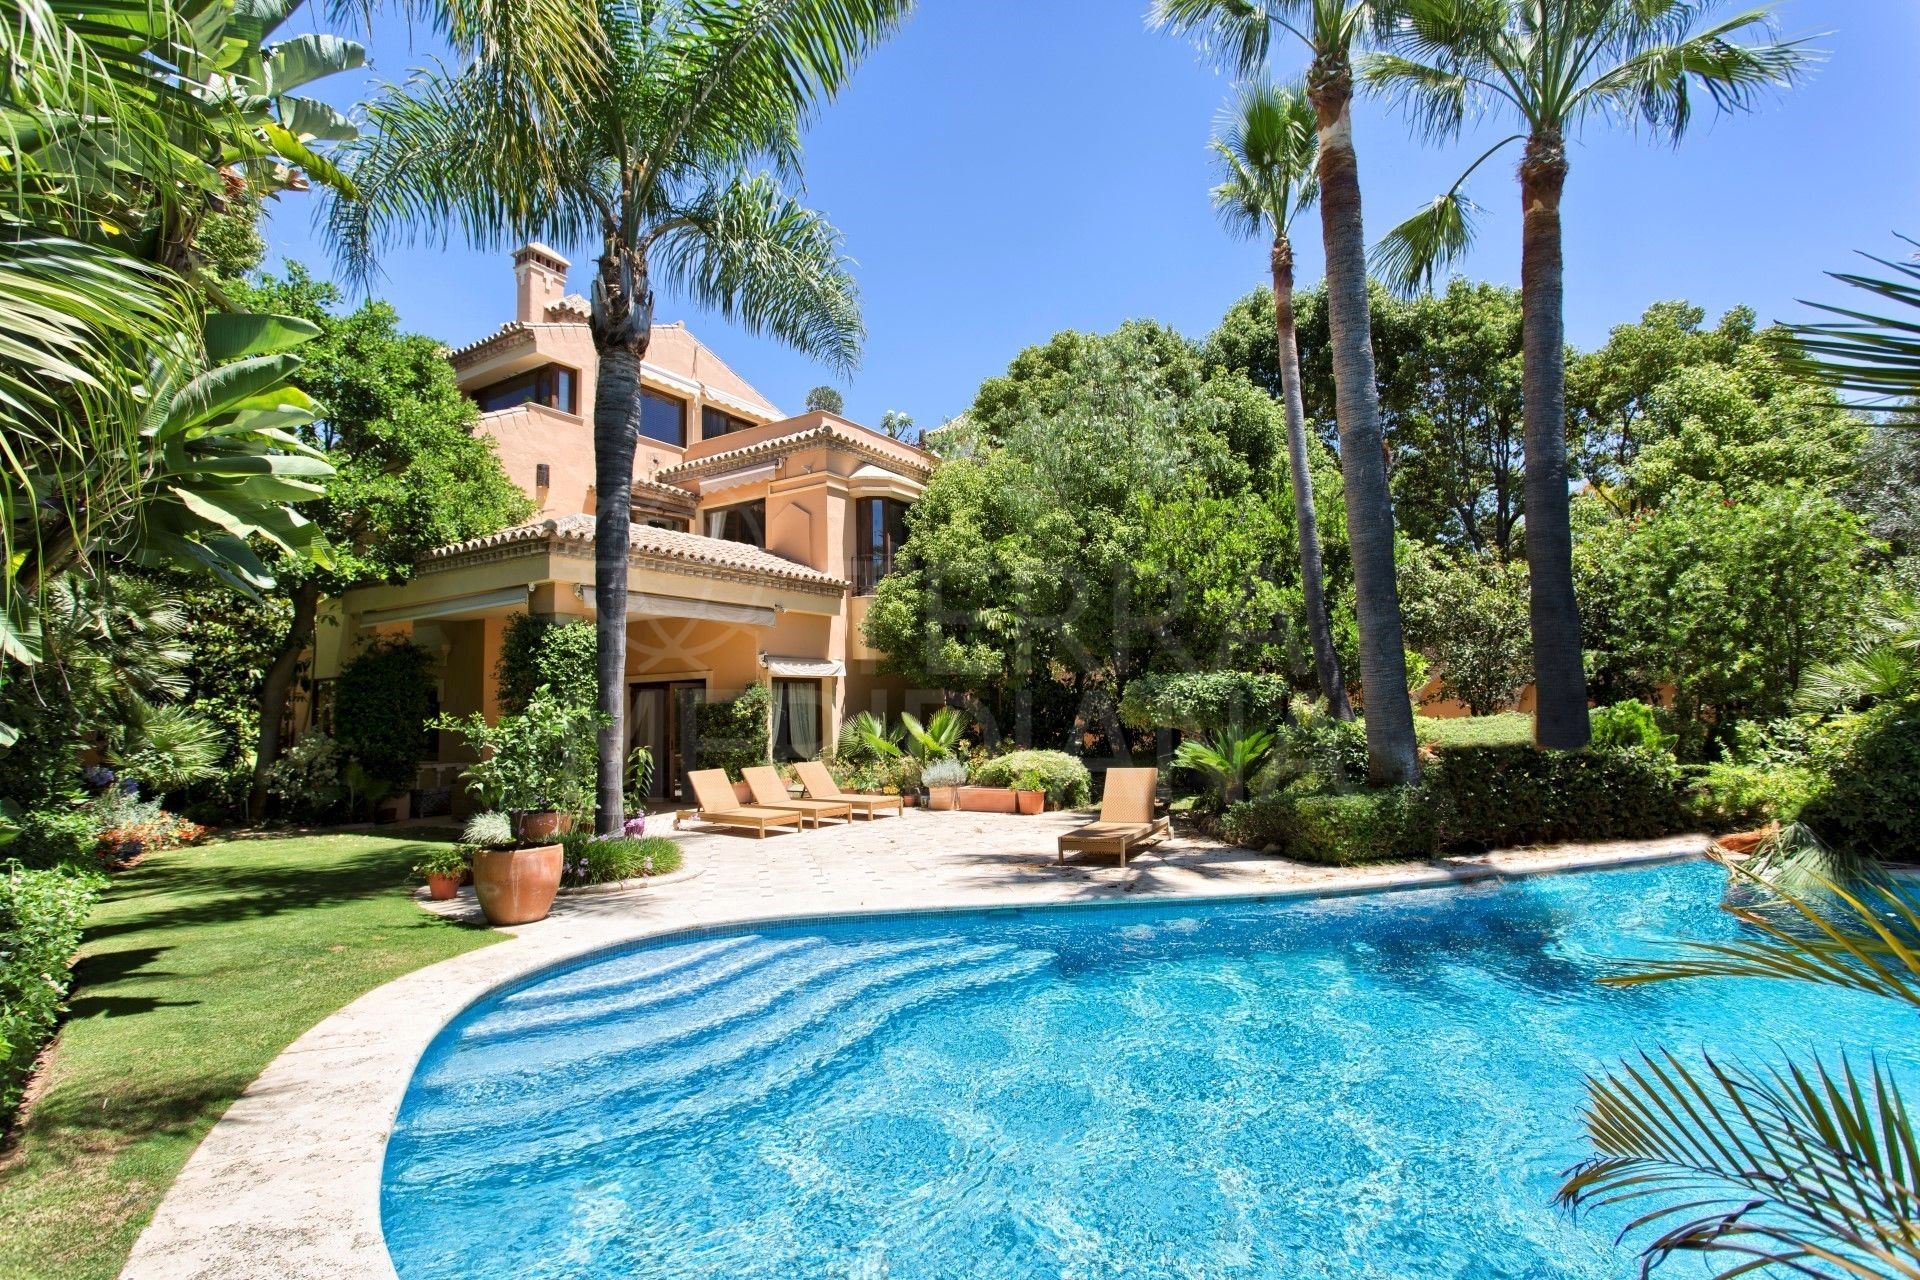 Villa en venta, con piscina interior y exterior, Altos de Puente Romano, Marbella